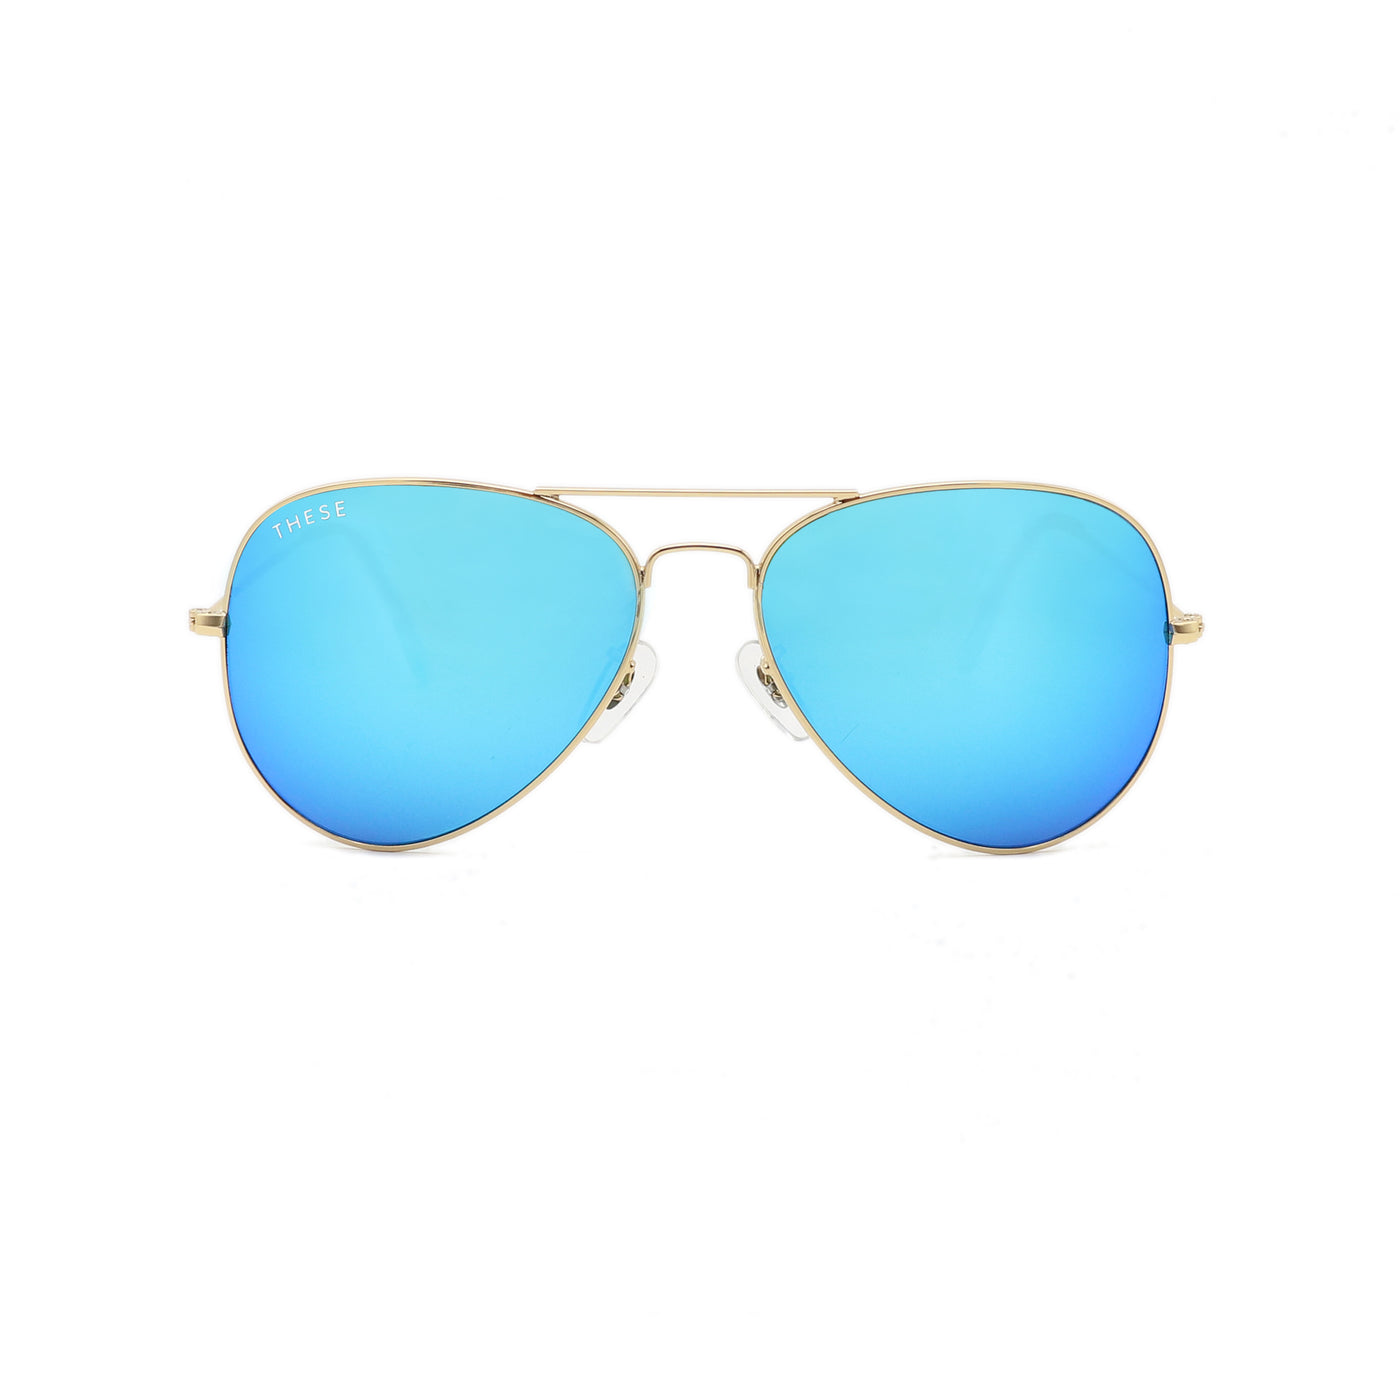 Men's Sunglasses - These Glasses - Blue-Light Blocking & Sunglasses For ...